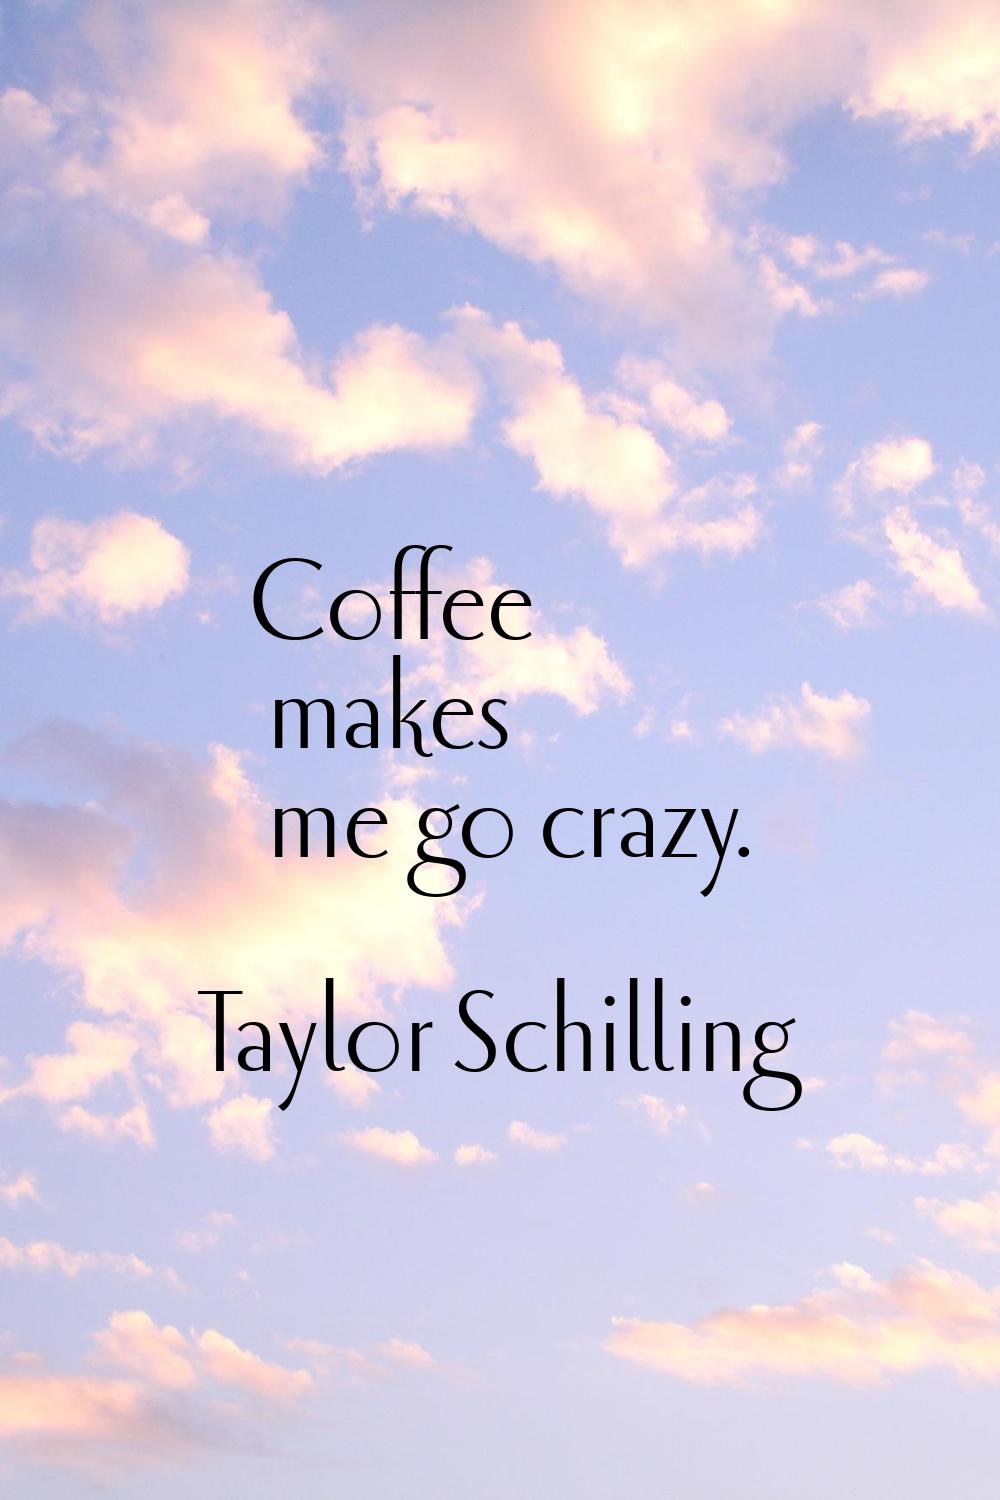 Coffee makes me go crazy.